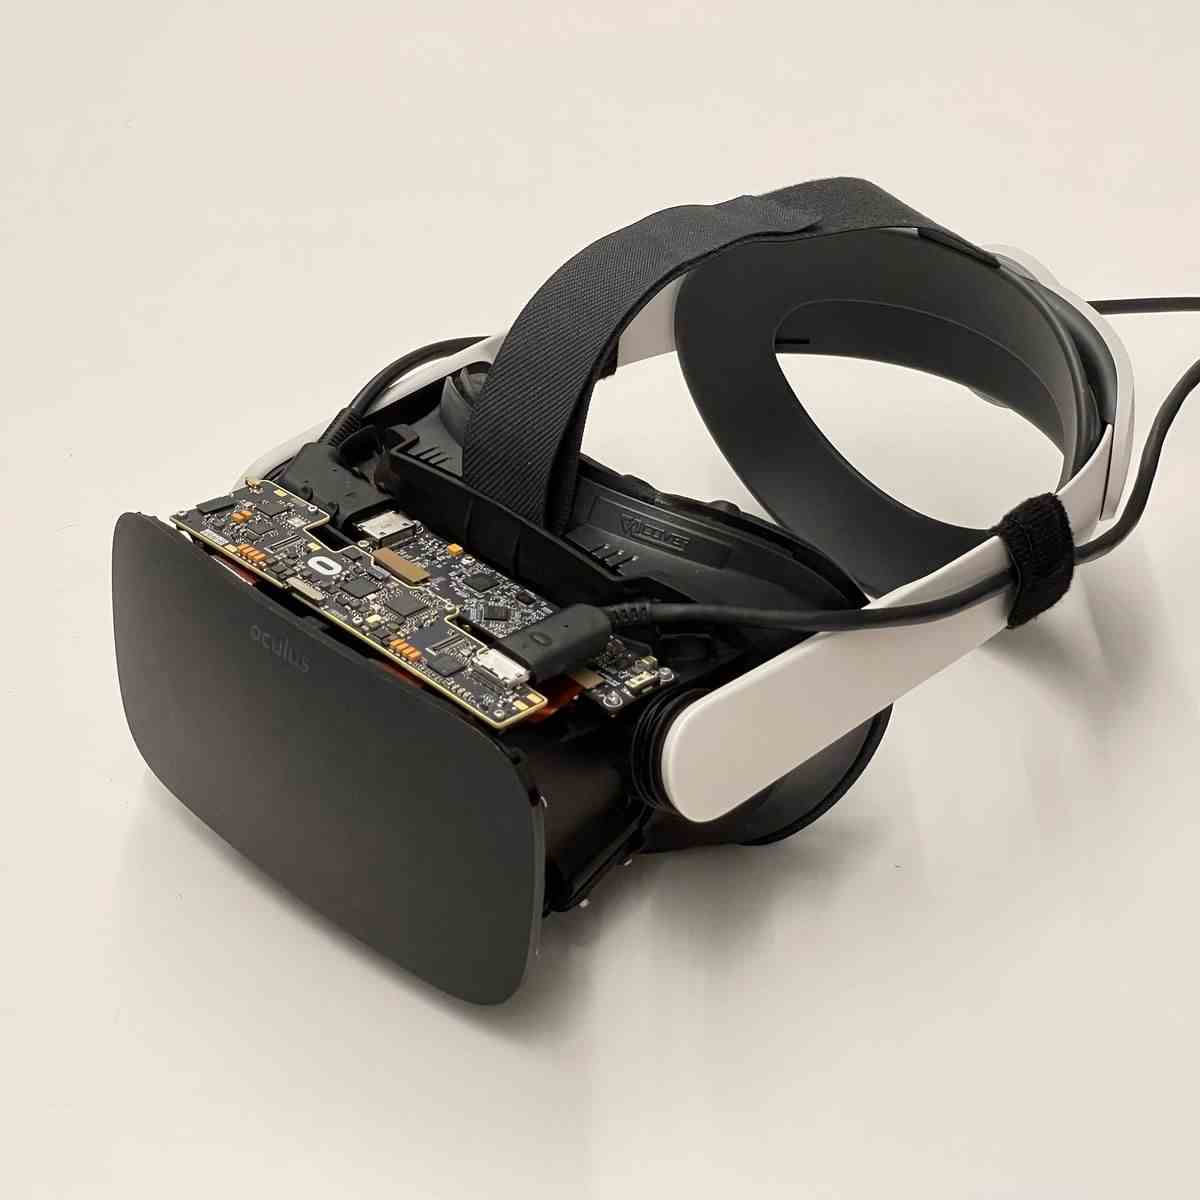 Ein schwarzes VR-Headset mit einem benutzerdefinierten hochauflösenden Display.